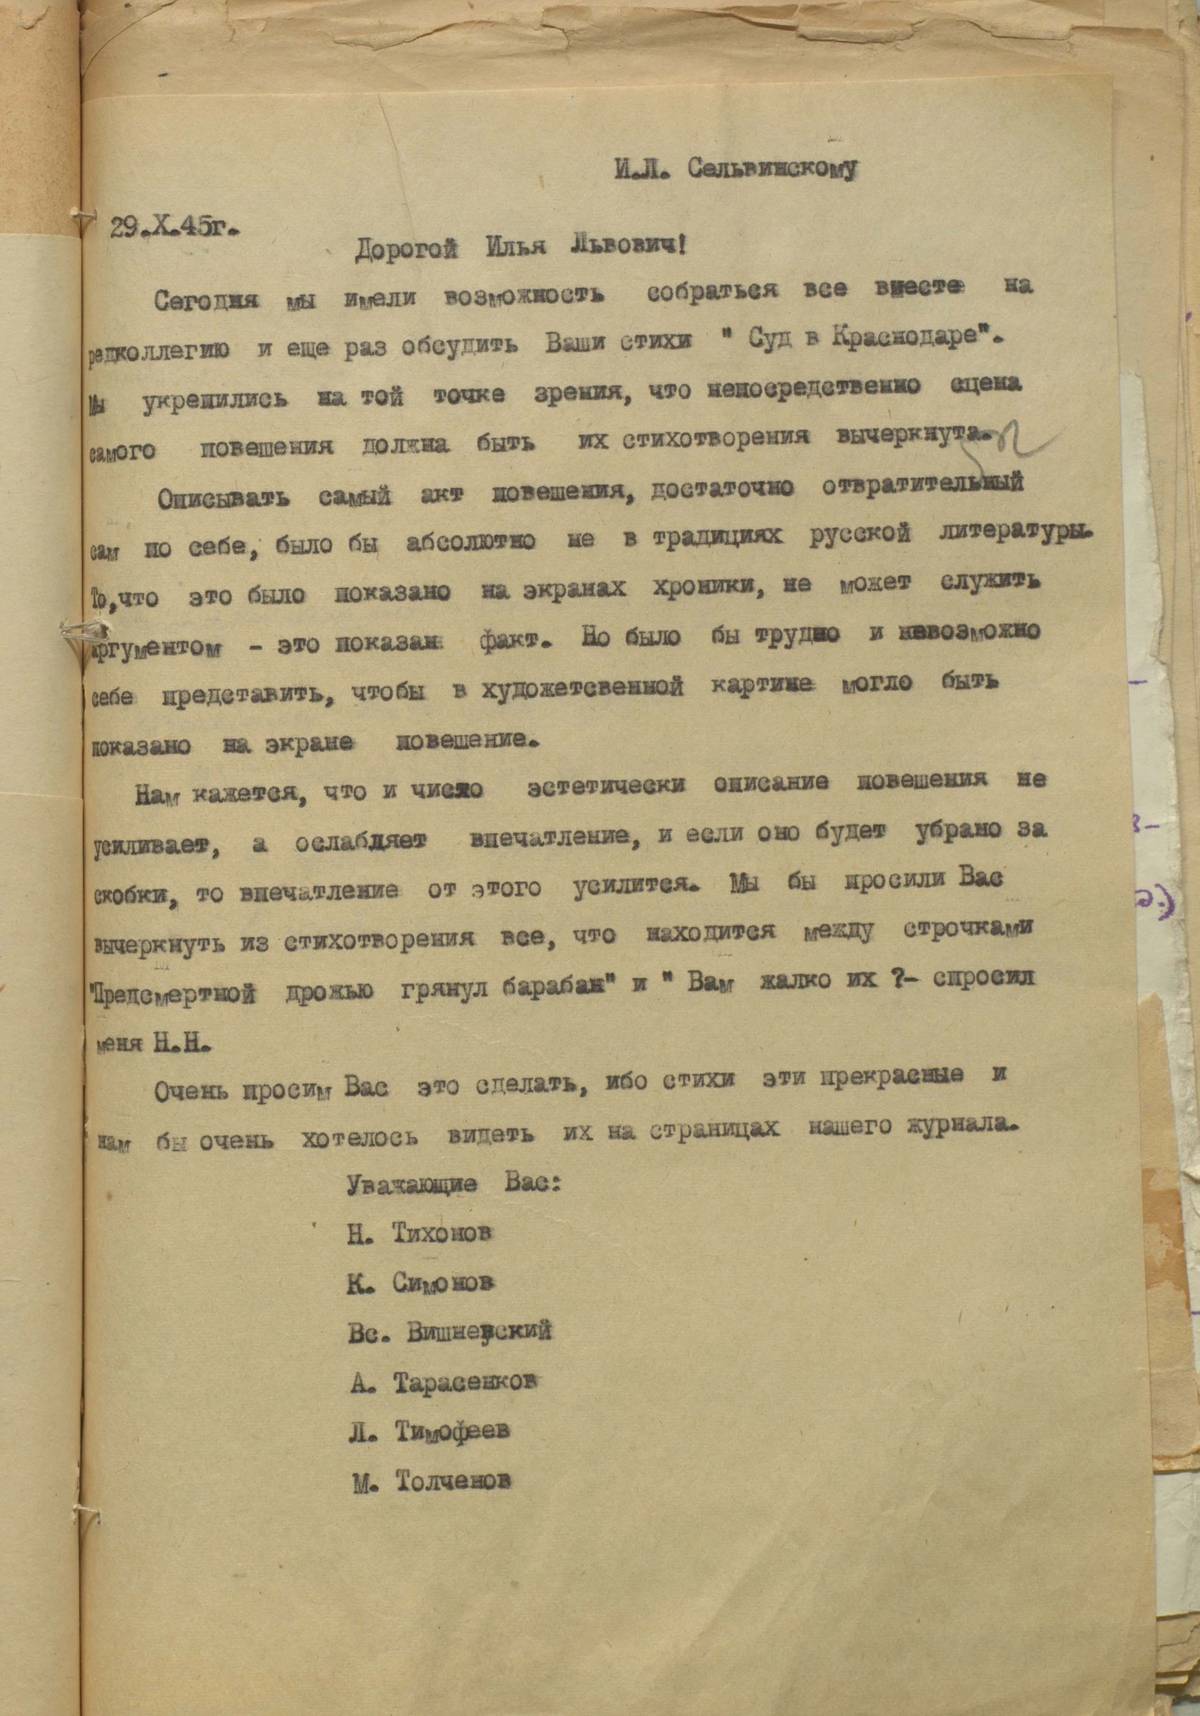 Letter by members of ‘Banner’ editorial board to Ilya Selvinsky, Oct. 29, 1945, signed: N. Tikhonov, K. Simonov, Vs. Vishnevsky, A. Tarasenkov, L. Timofeev, N. Tolchenov